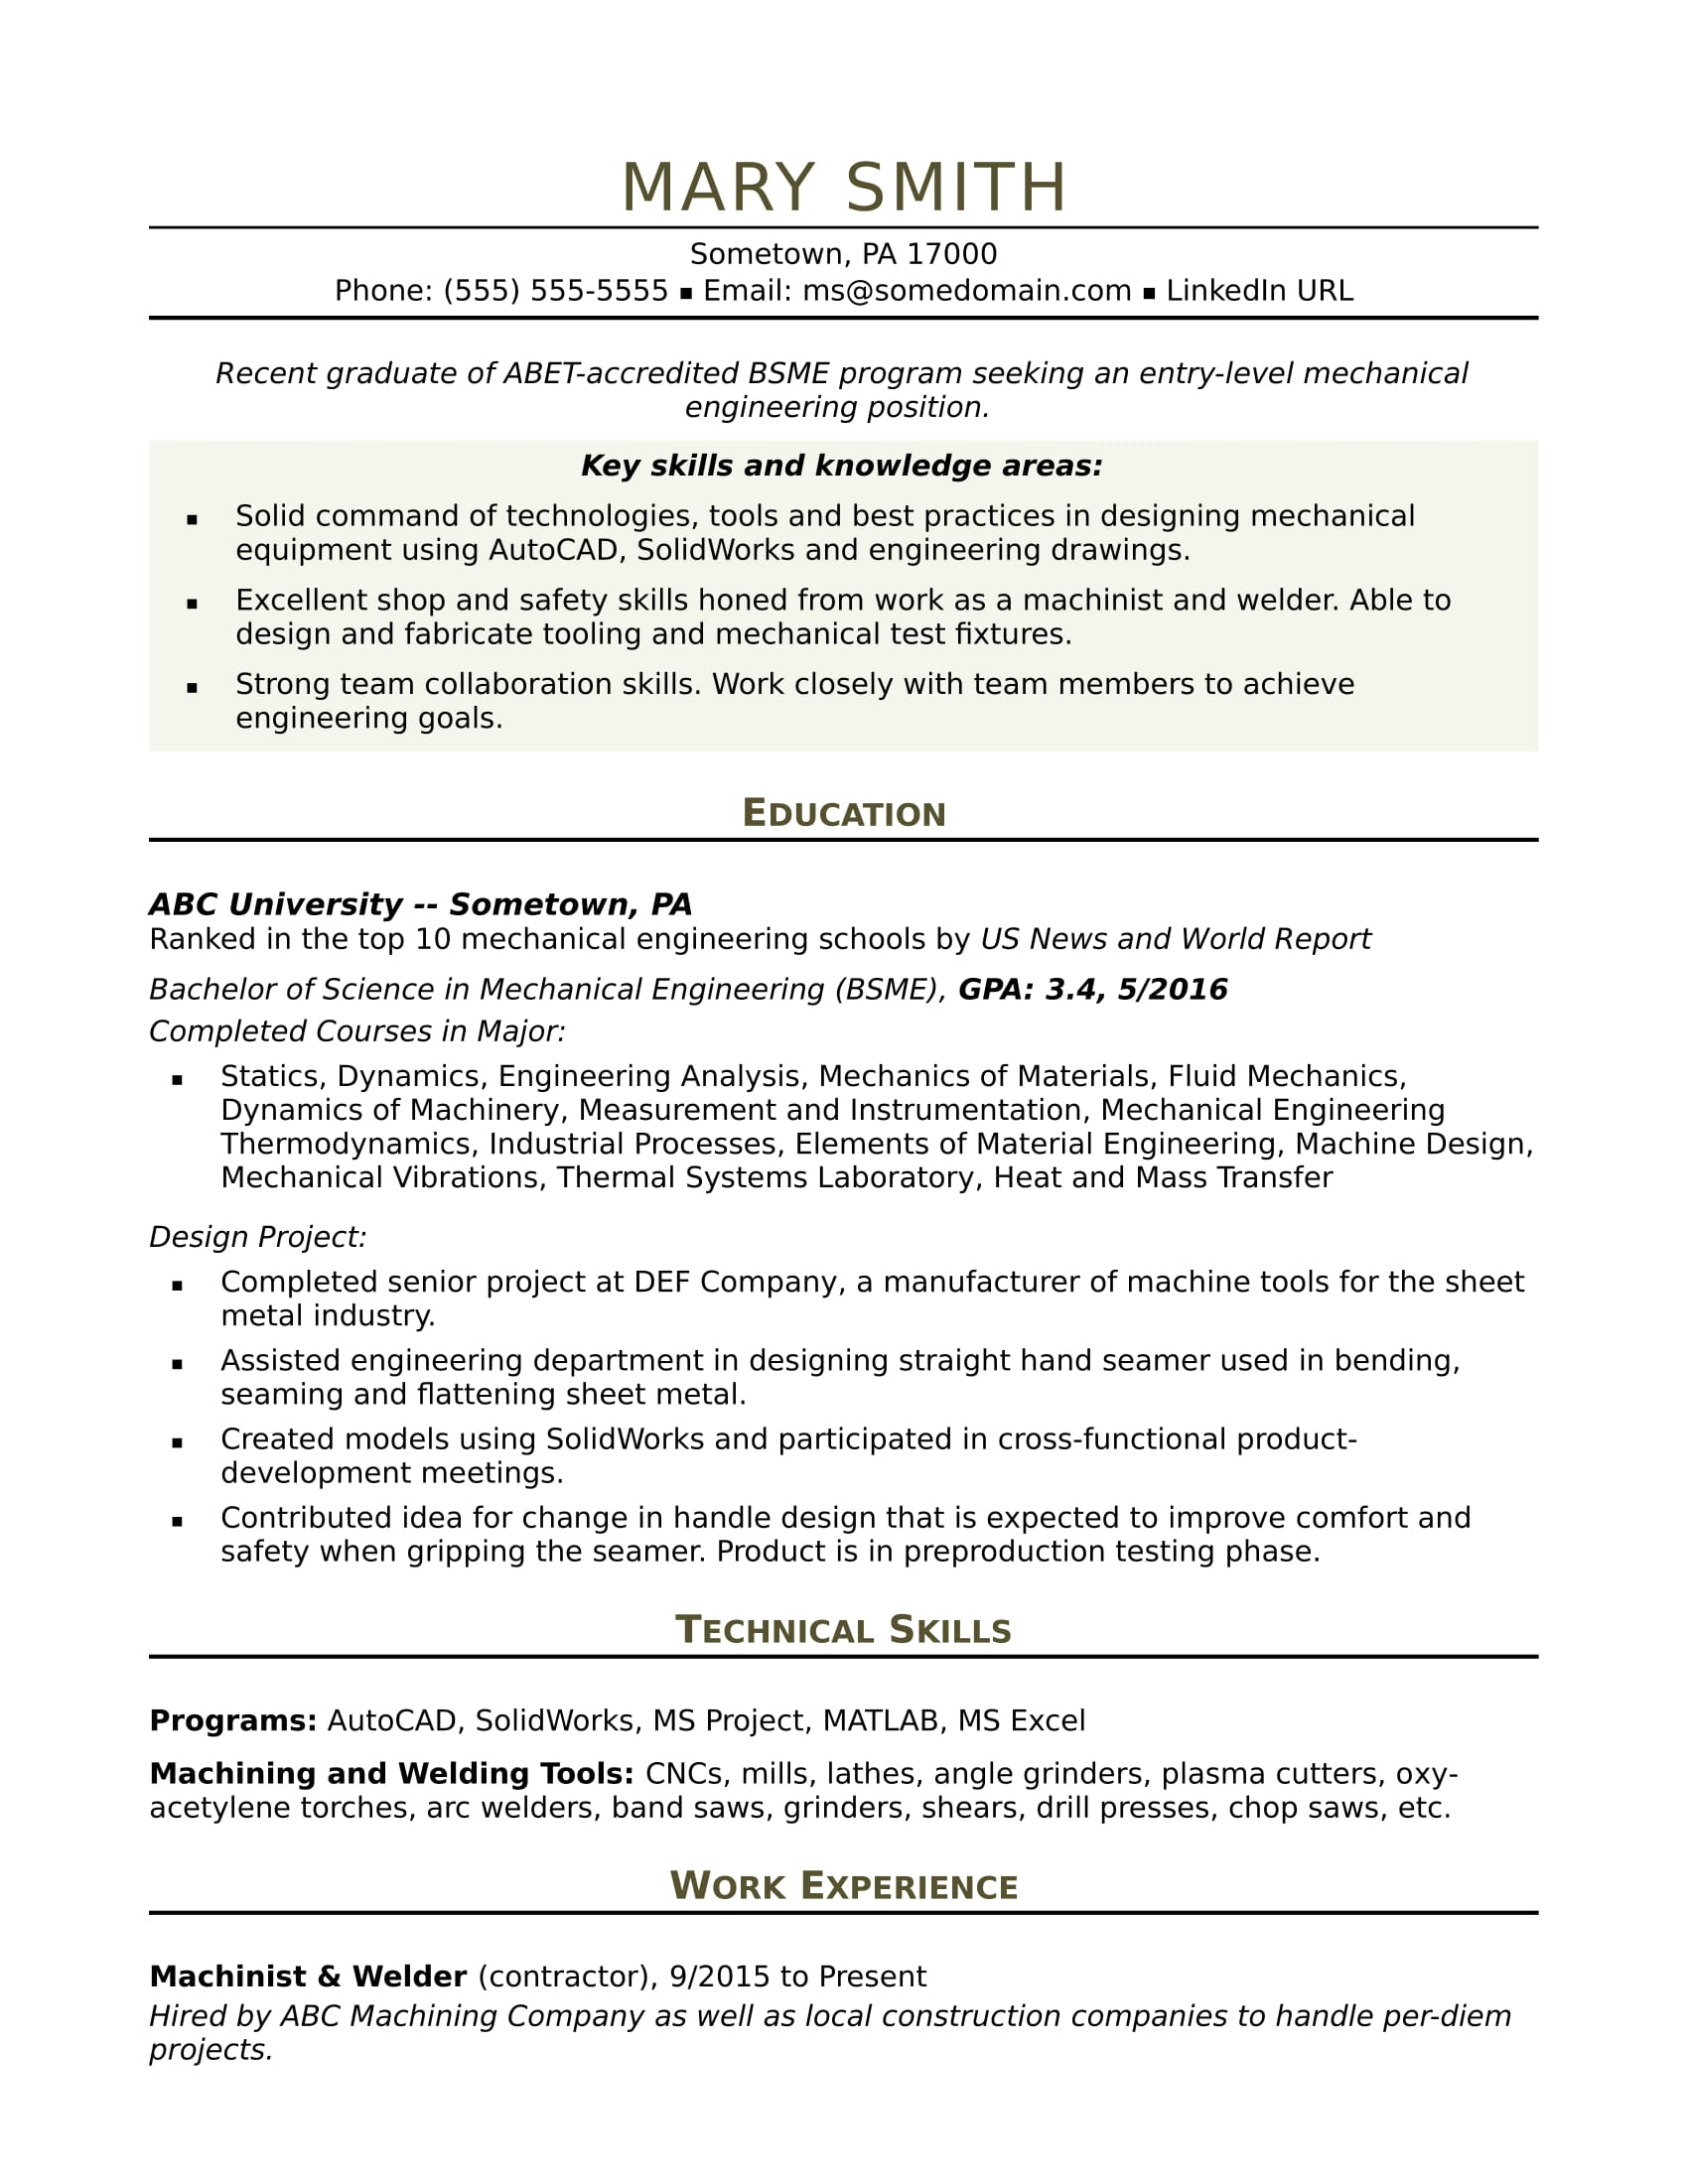 sample resume for an entry level mechanical engineer monster com